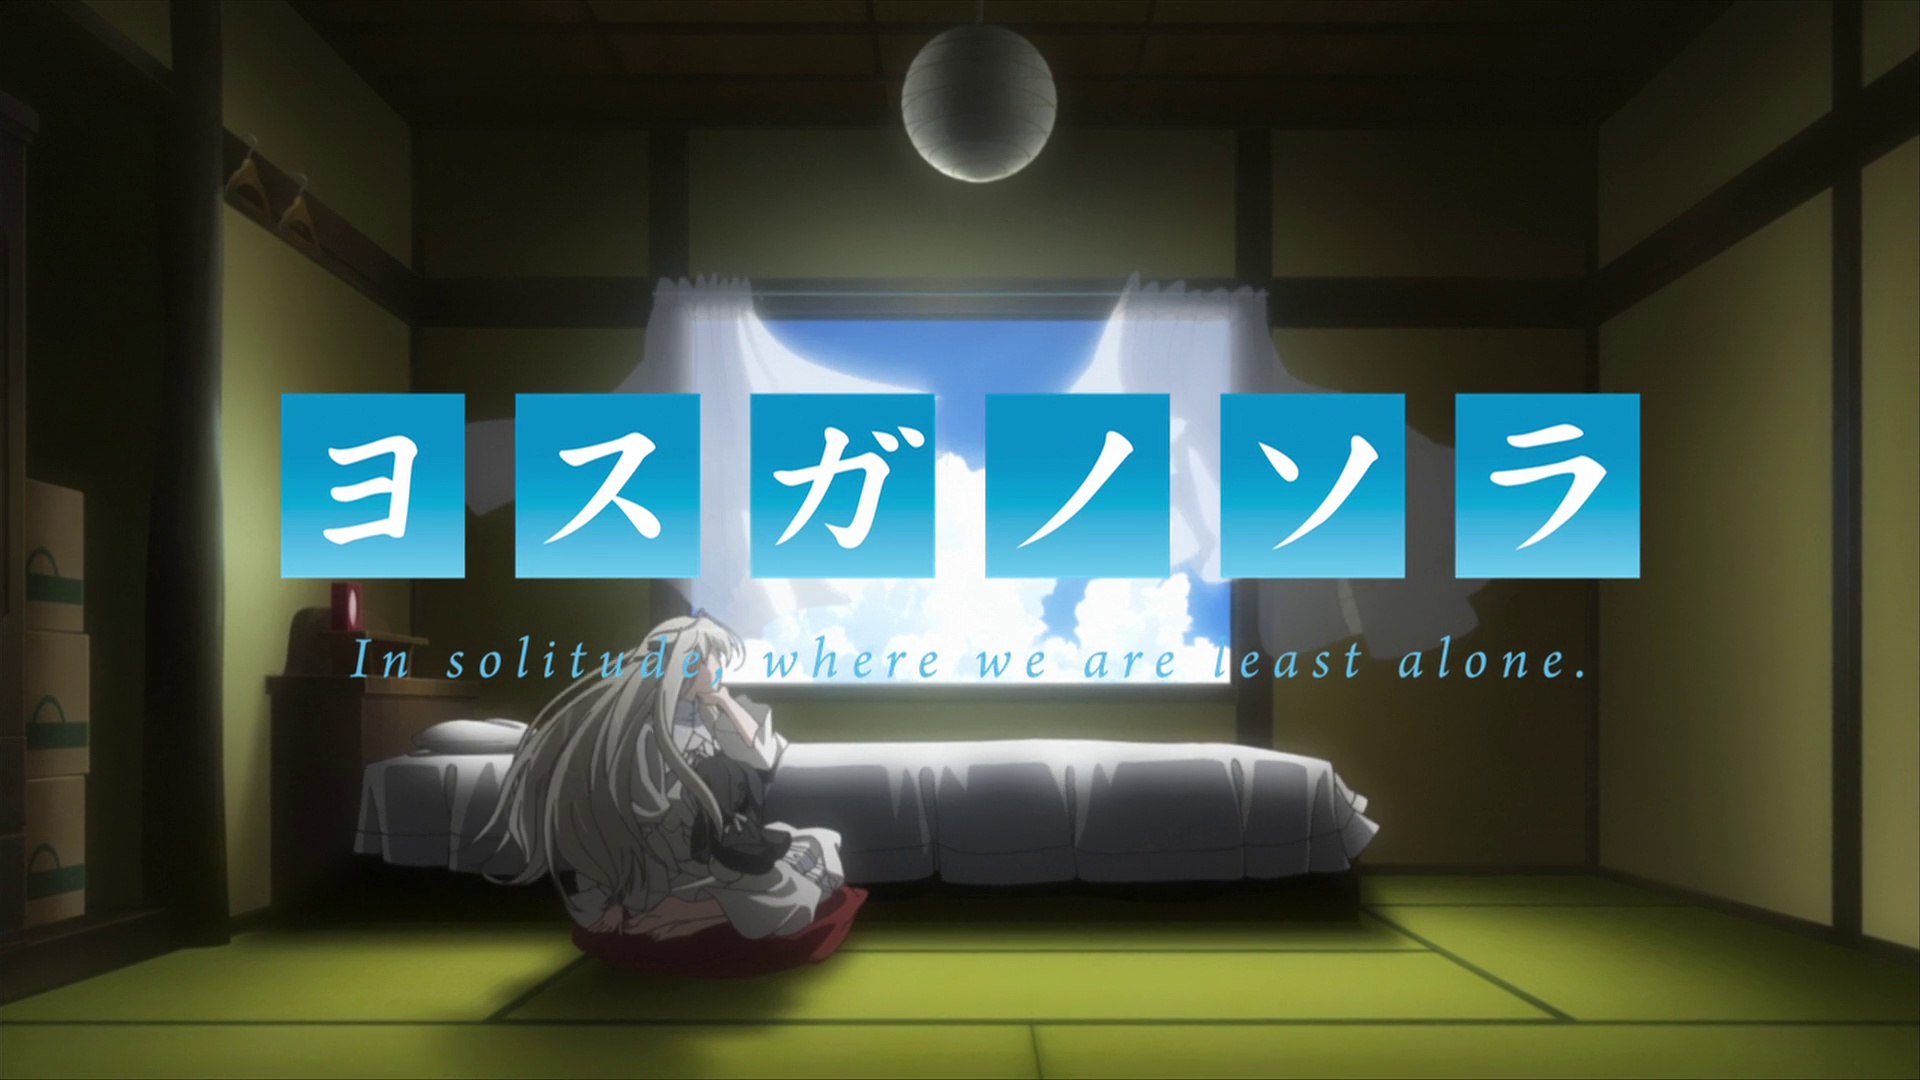 Yosuga no Sora: In Solitude, Where We Are Least Alone.